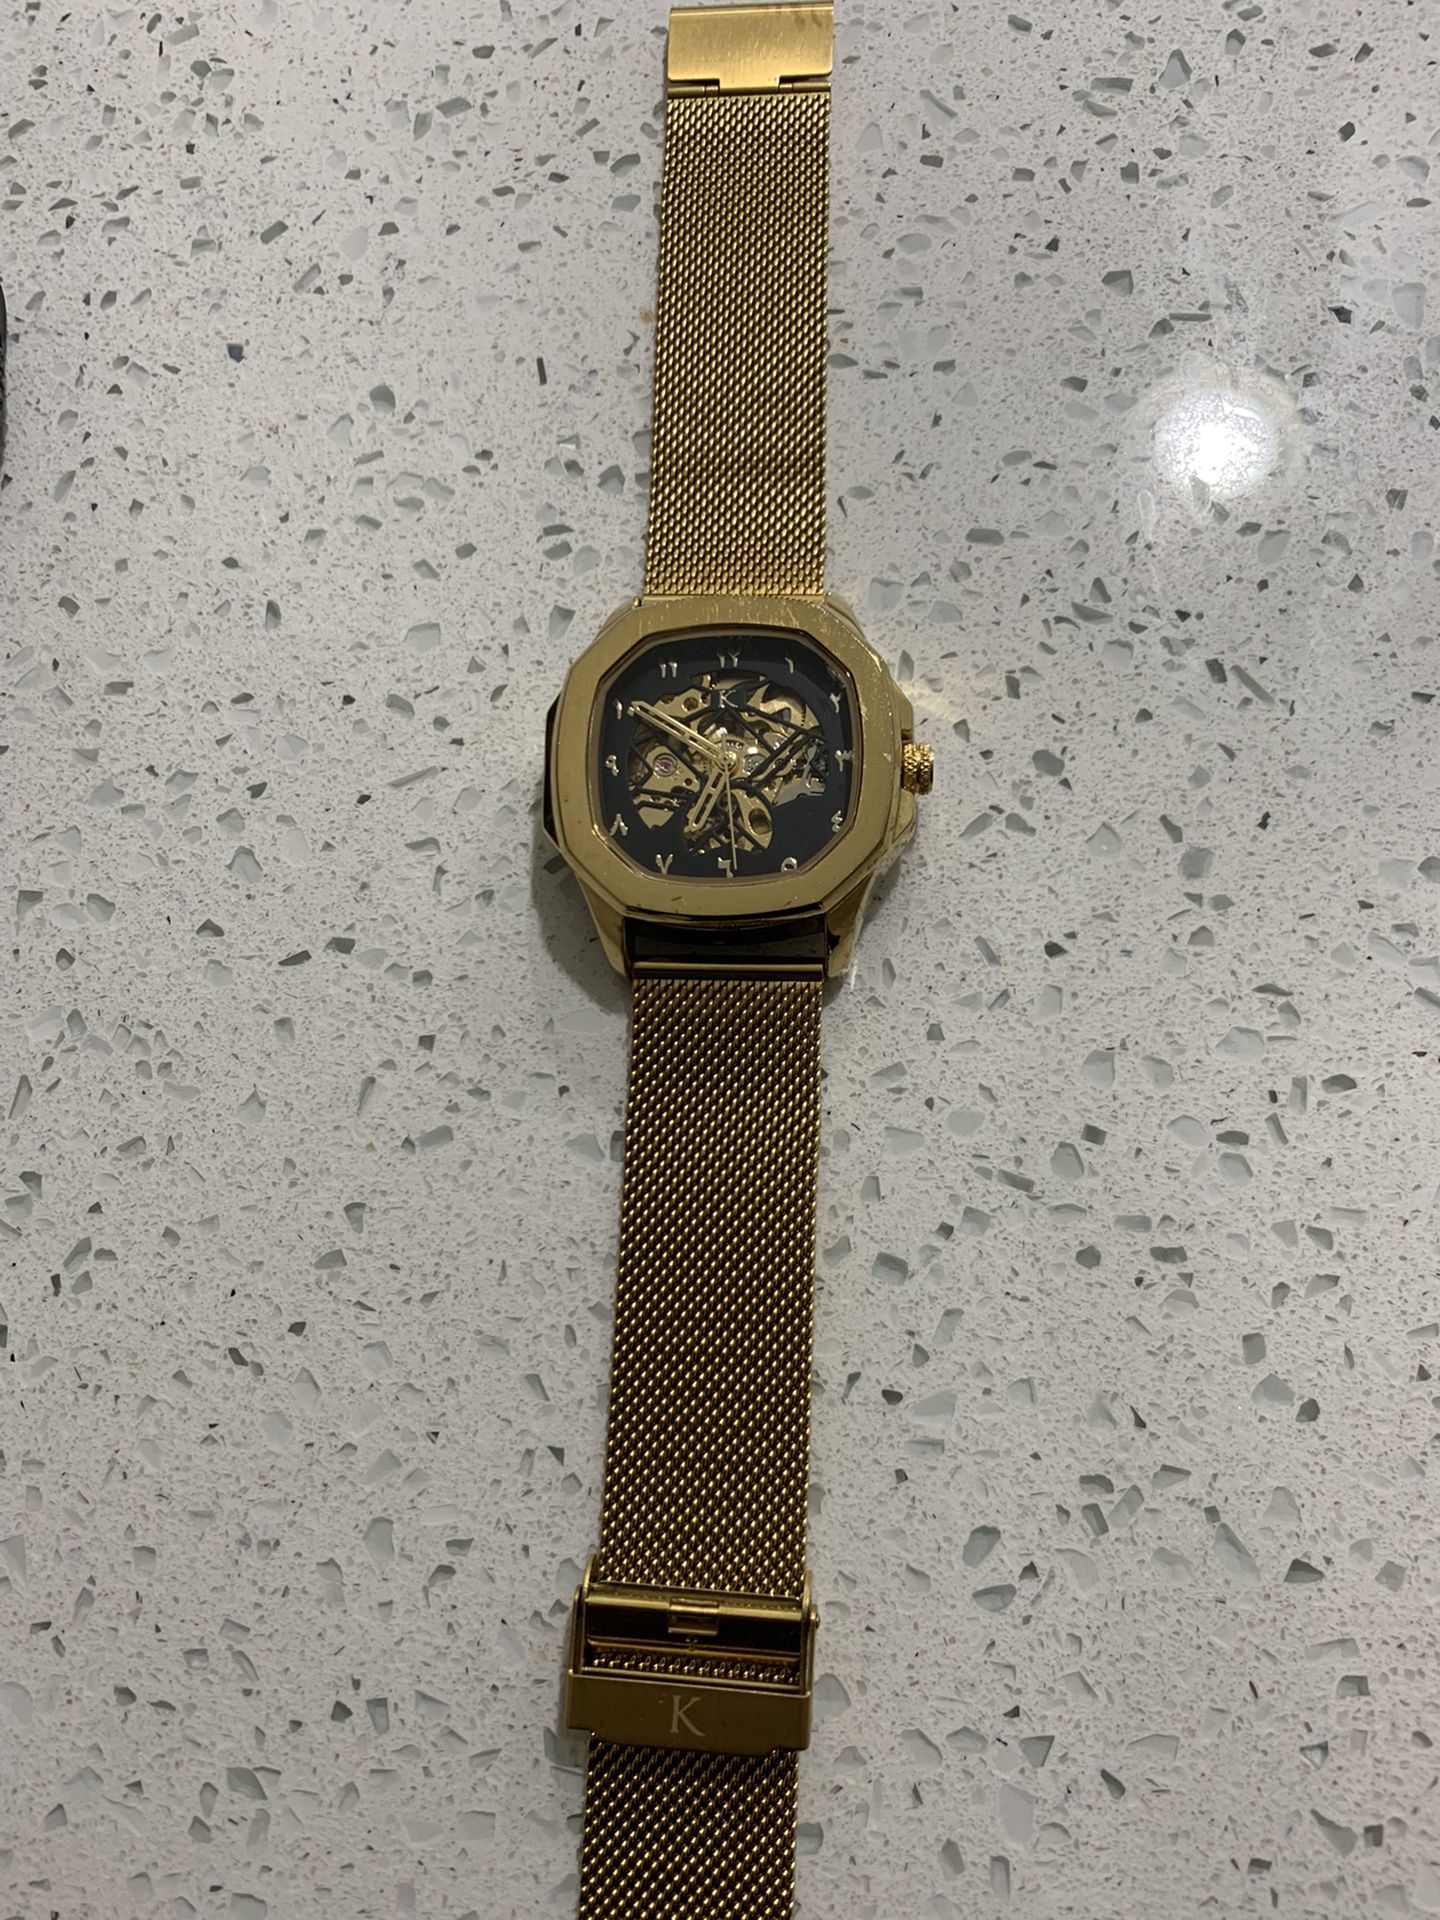 Basically Brand New Klein Watch $30 